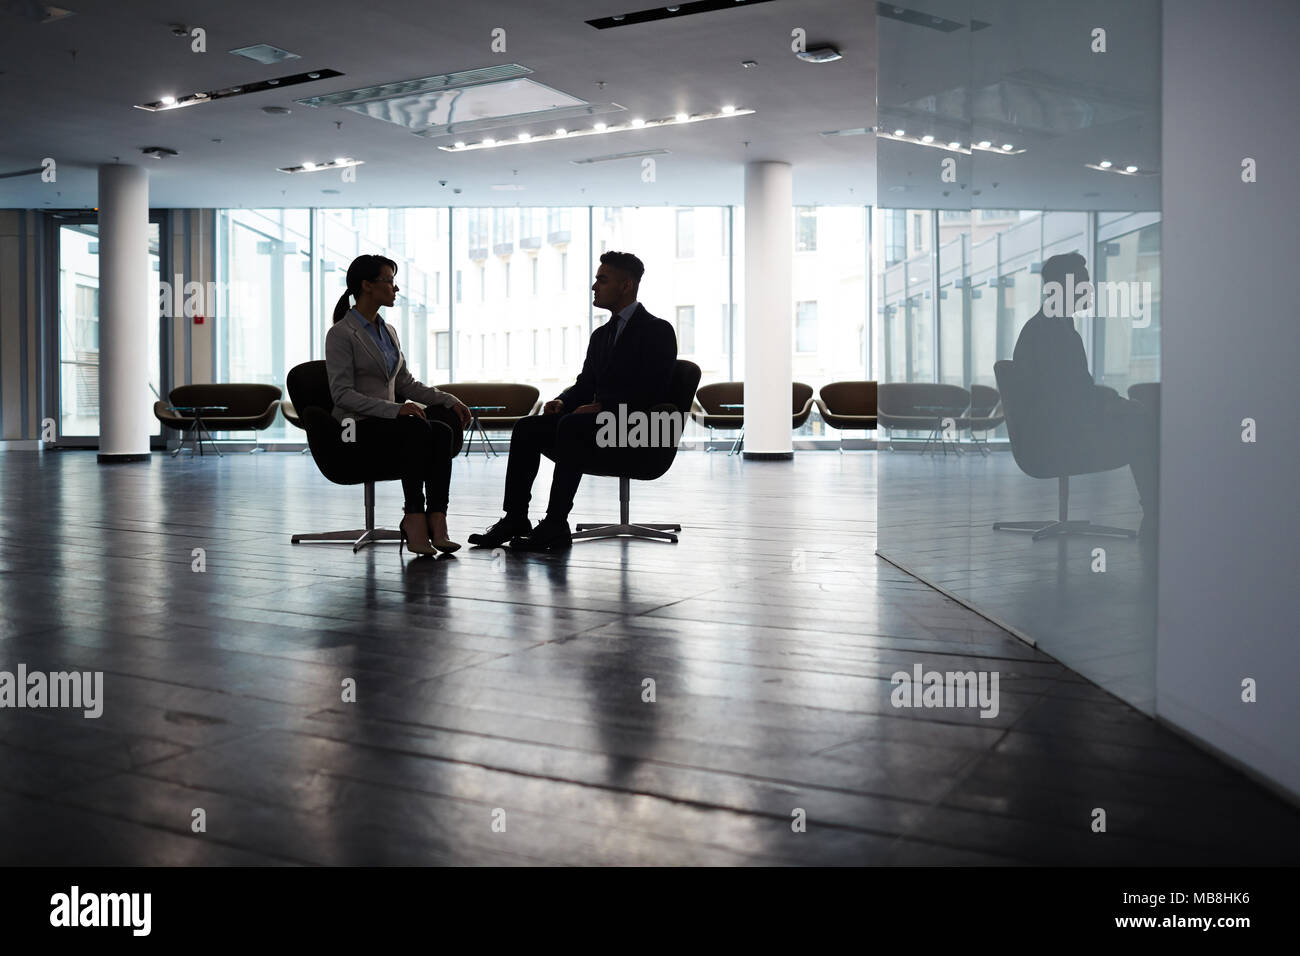 Selbstbewussten jungen Manager sitzen gegenüber ihren männlichen Partner beim Brainstorming über gemeinsame Projekt, Interieur des geräumigen dim Office Lobby im Hintergrund Stockfoto